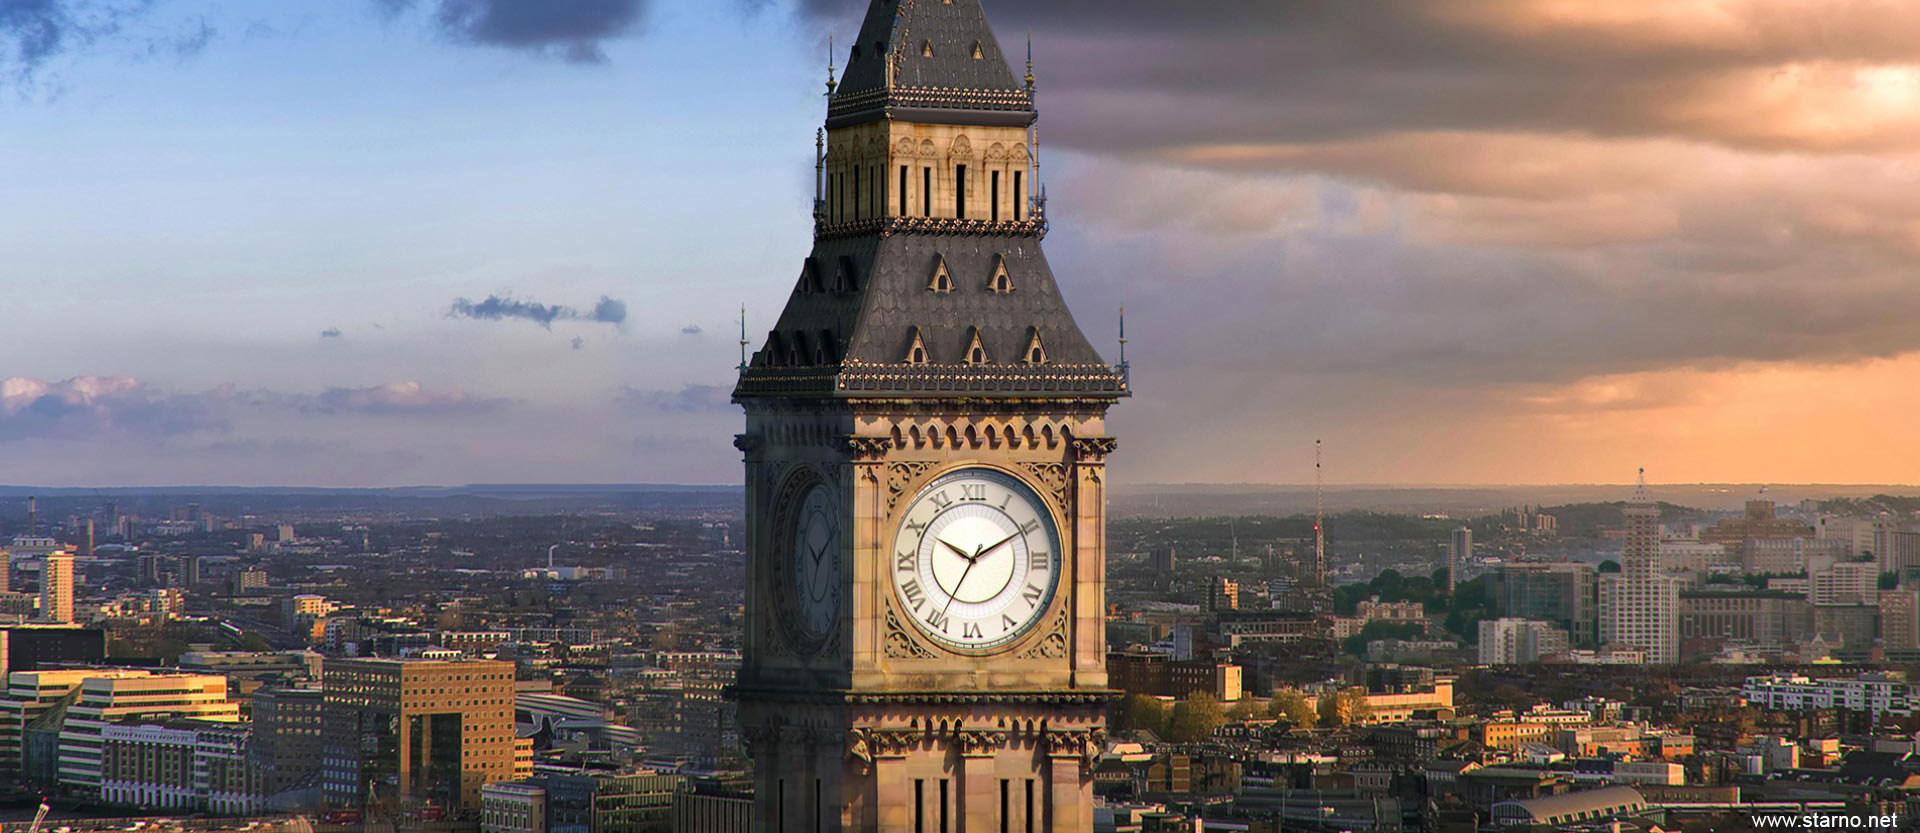 London Clockwork